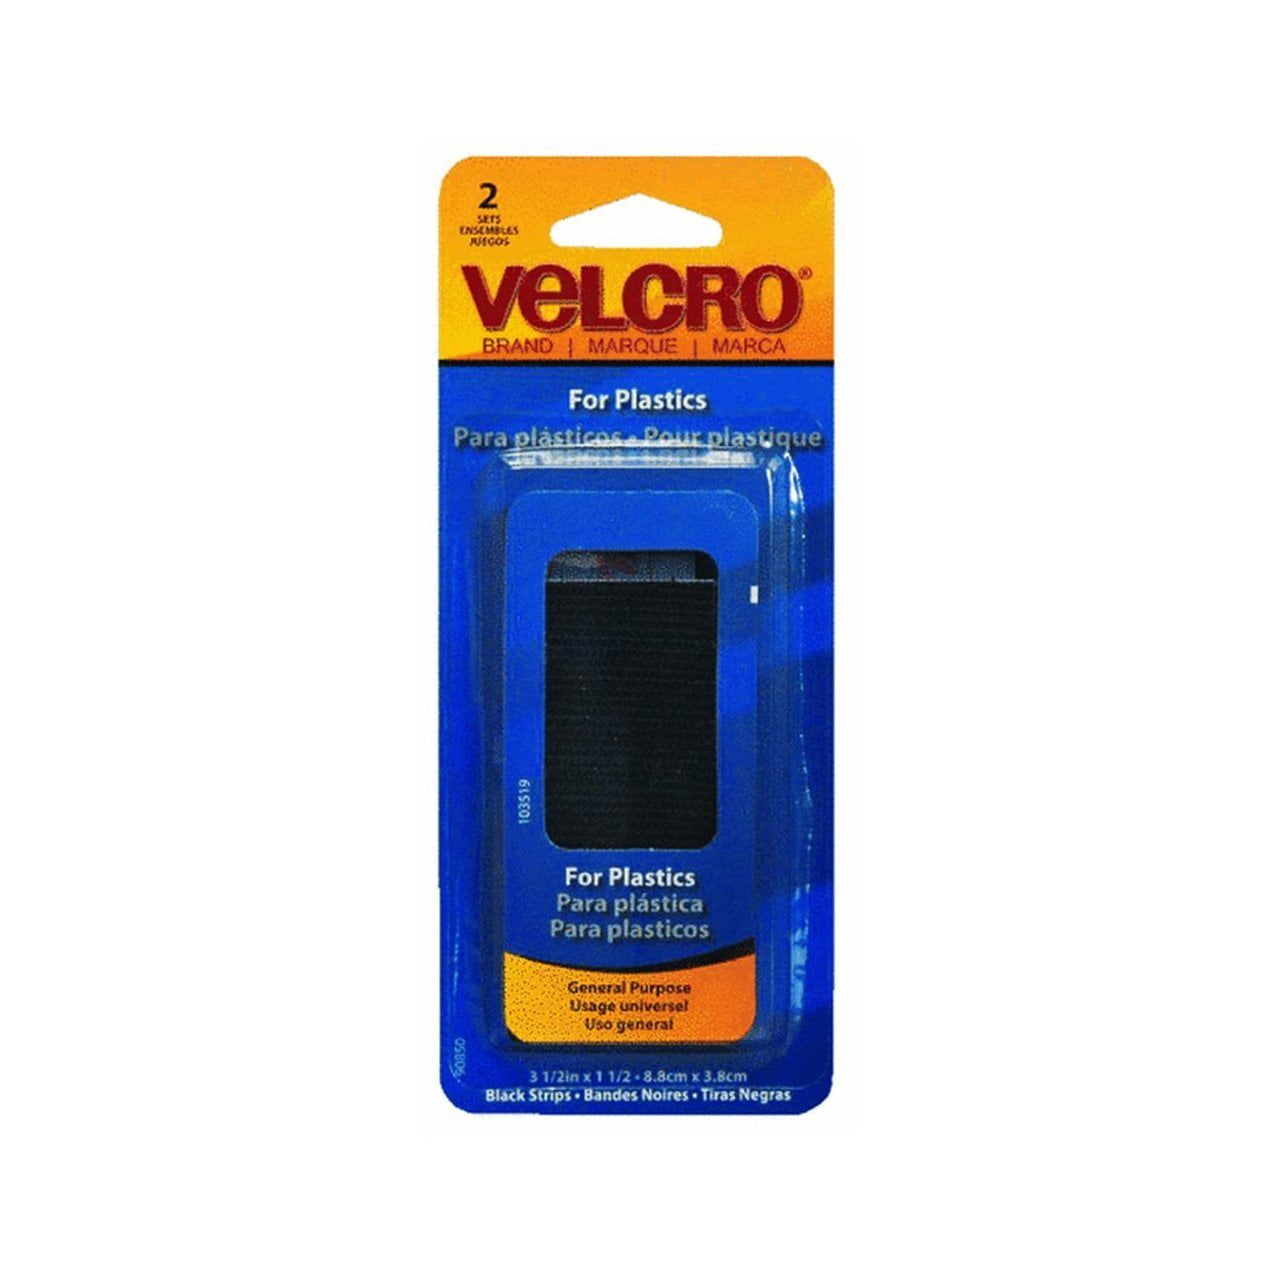 VELCRO Brand - Sticky Back for Auto - 3 1/2 x 1 1/2 Strips, 2 Sets - Gray